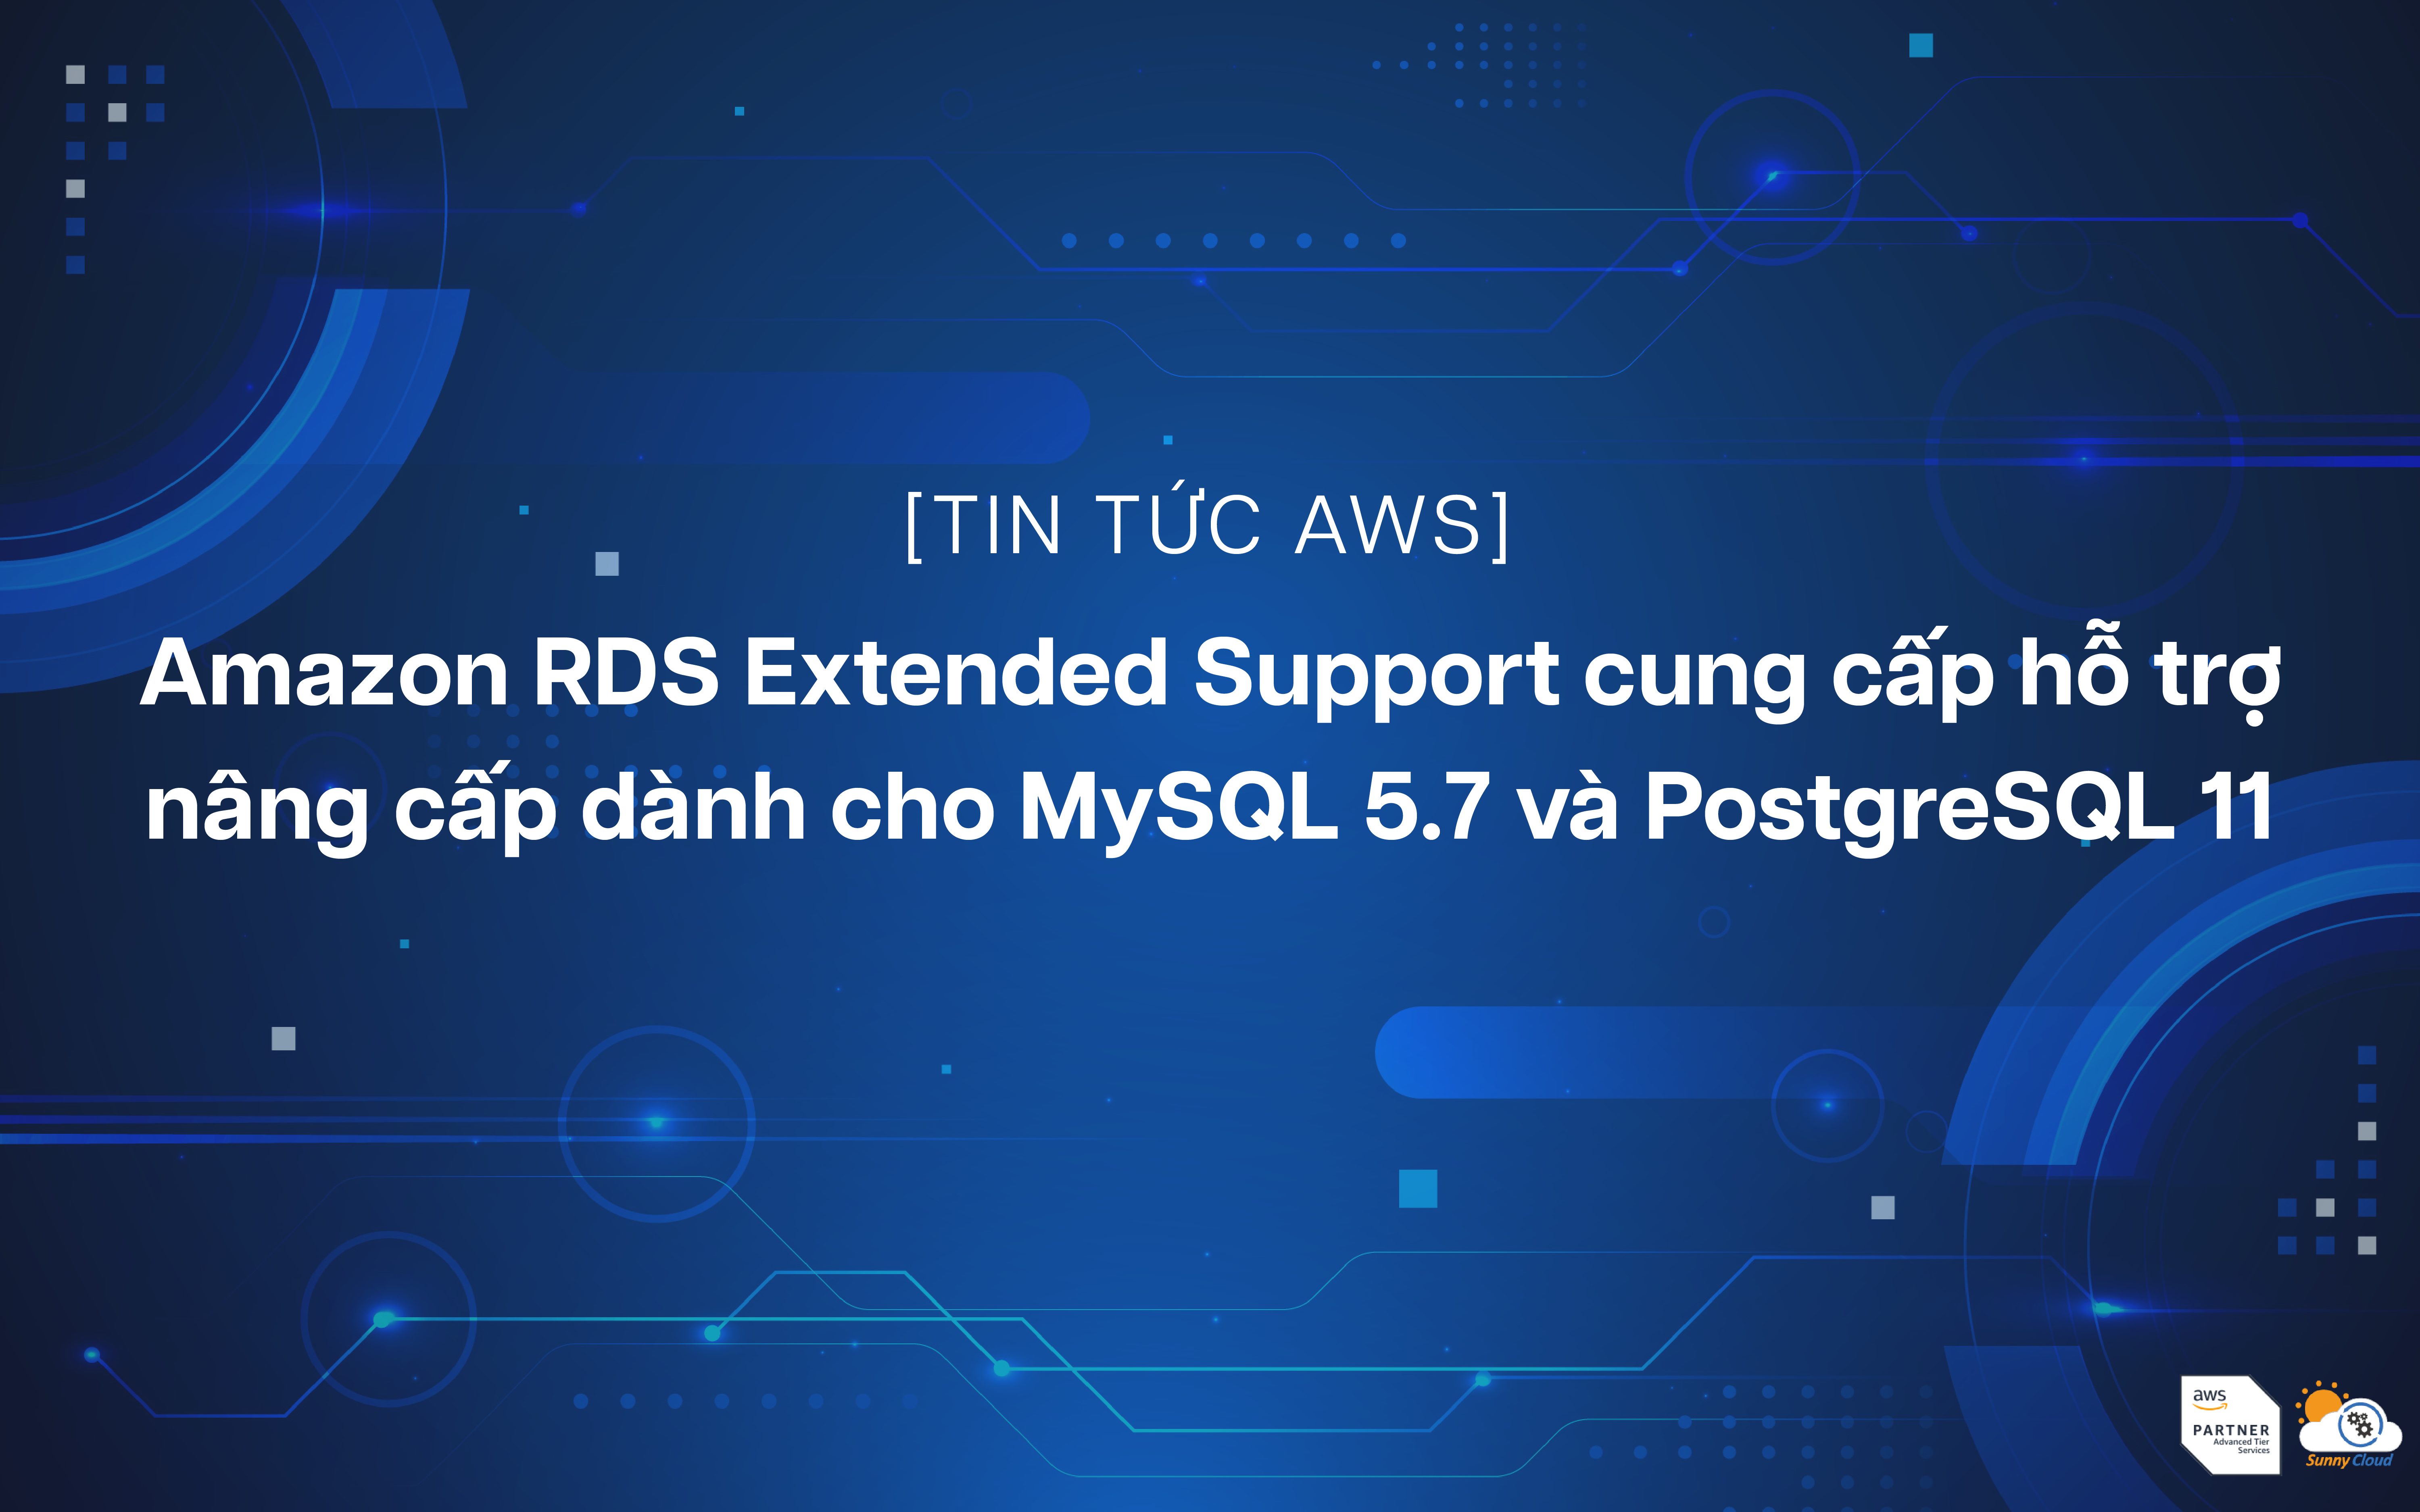 Amazon RDS Extended Support cung cấp hỗ trợ nâng cấp dành cho MySQL 5.7 và PostgreSQL 11